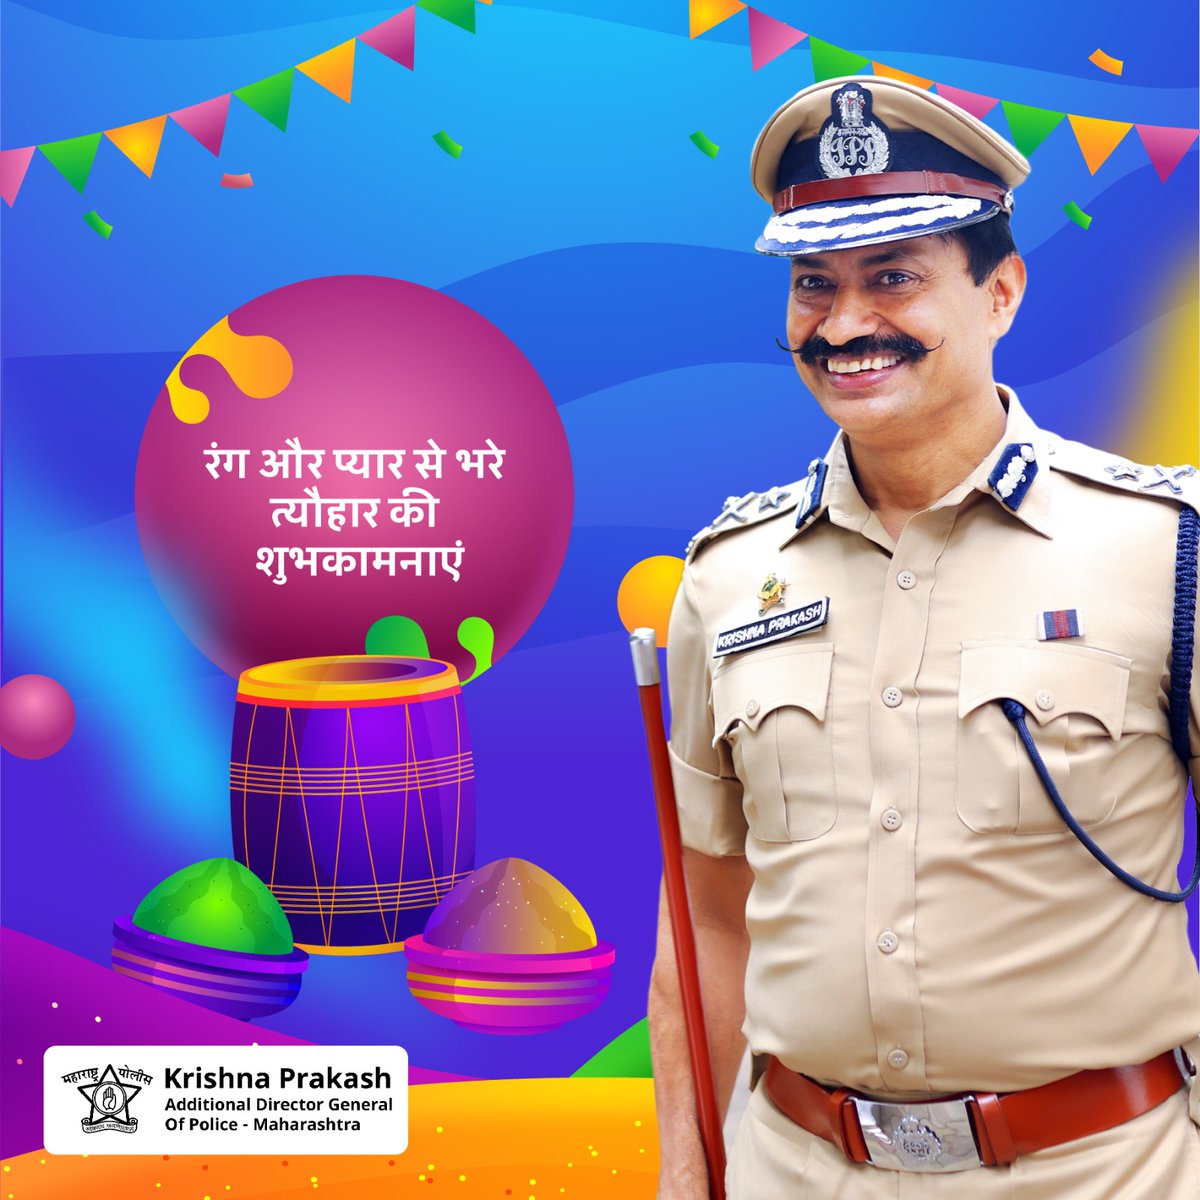 रंग और प्यार से भरे त्योहार की शुभकामनाएं ❤️ #HappyHoli #IPSKrishnaPrakash